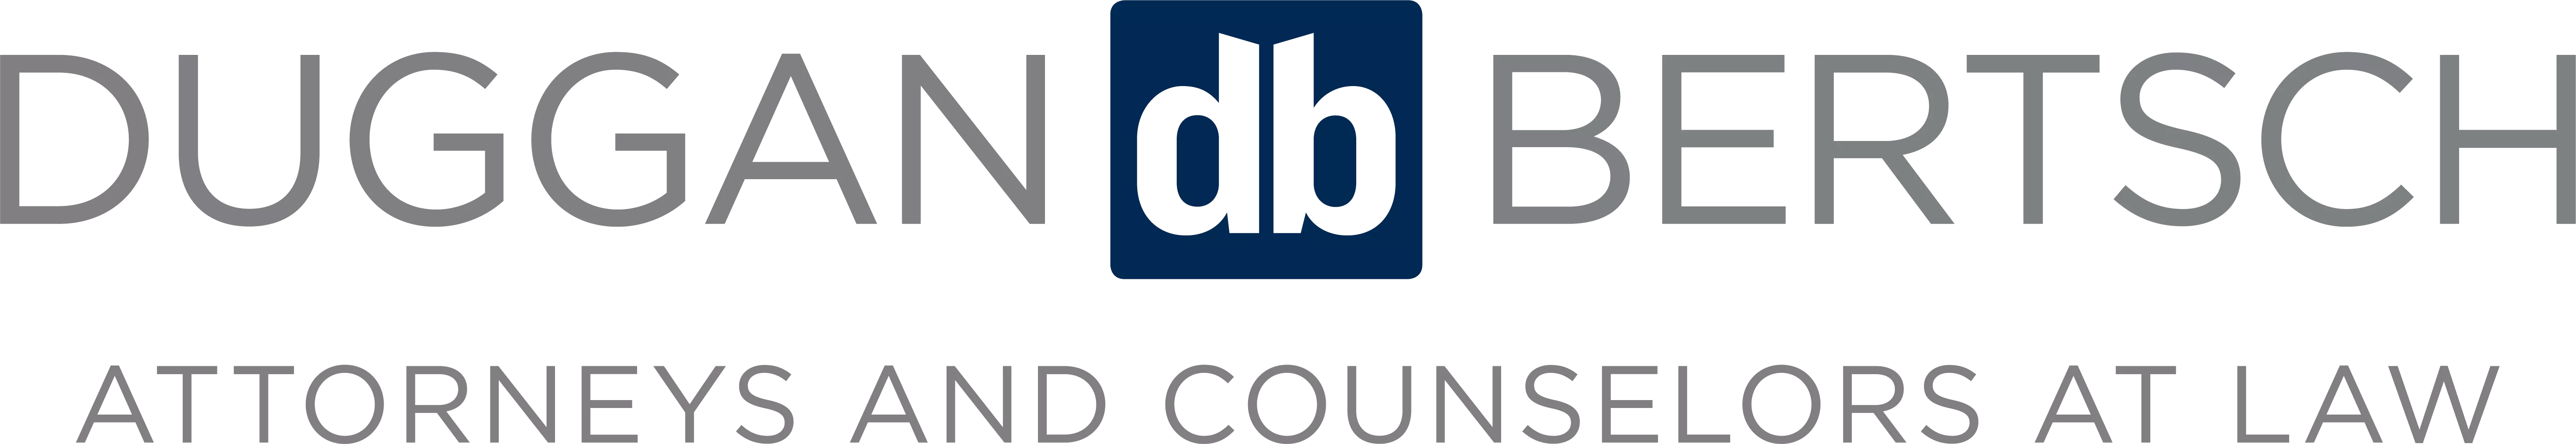 Duggan Bertsch logo